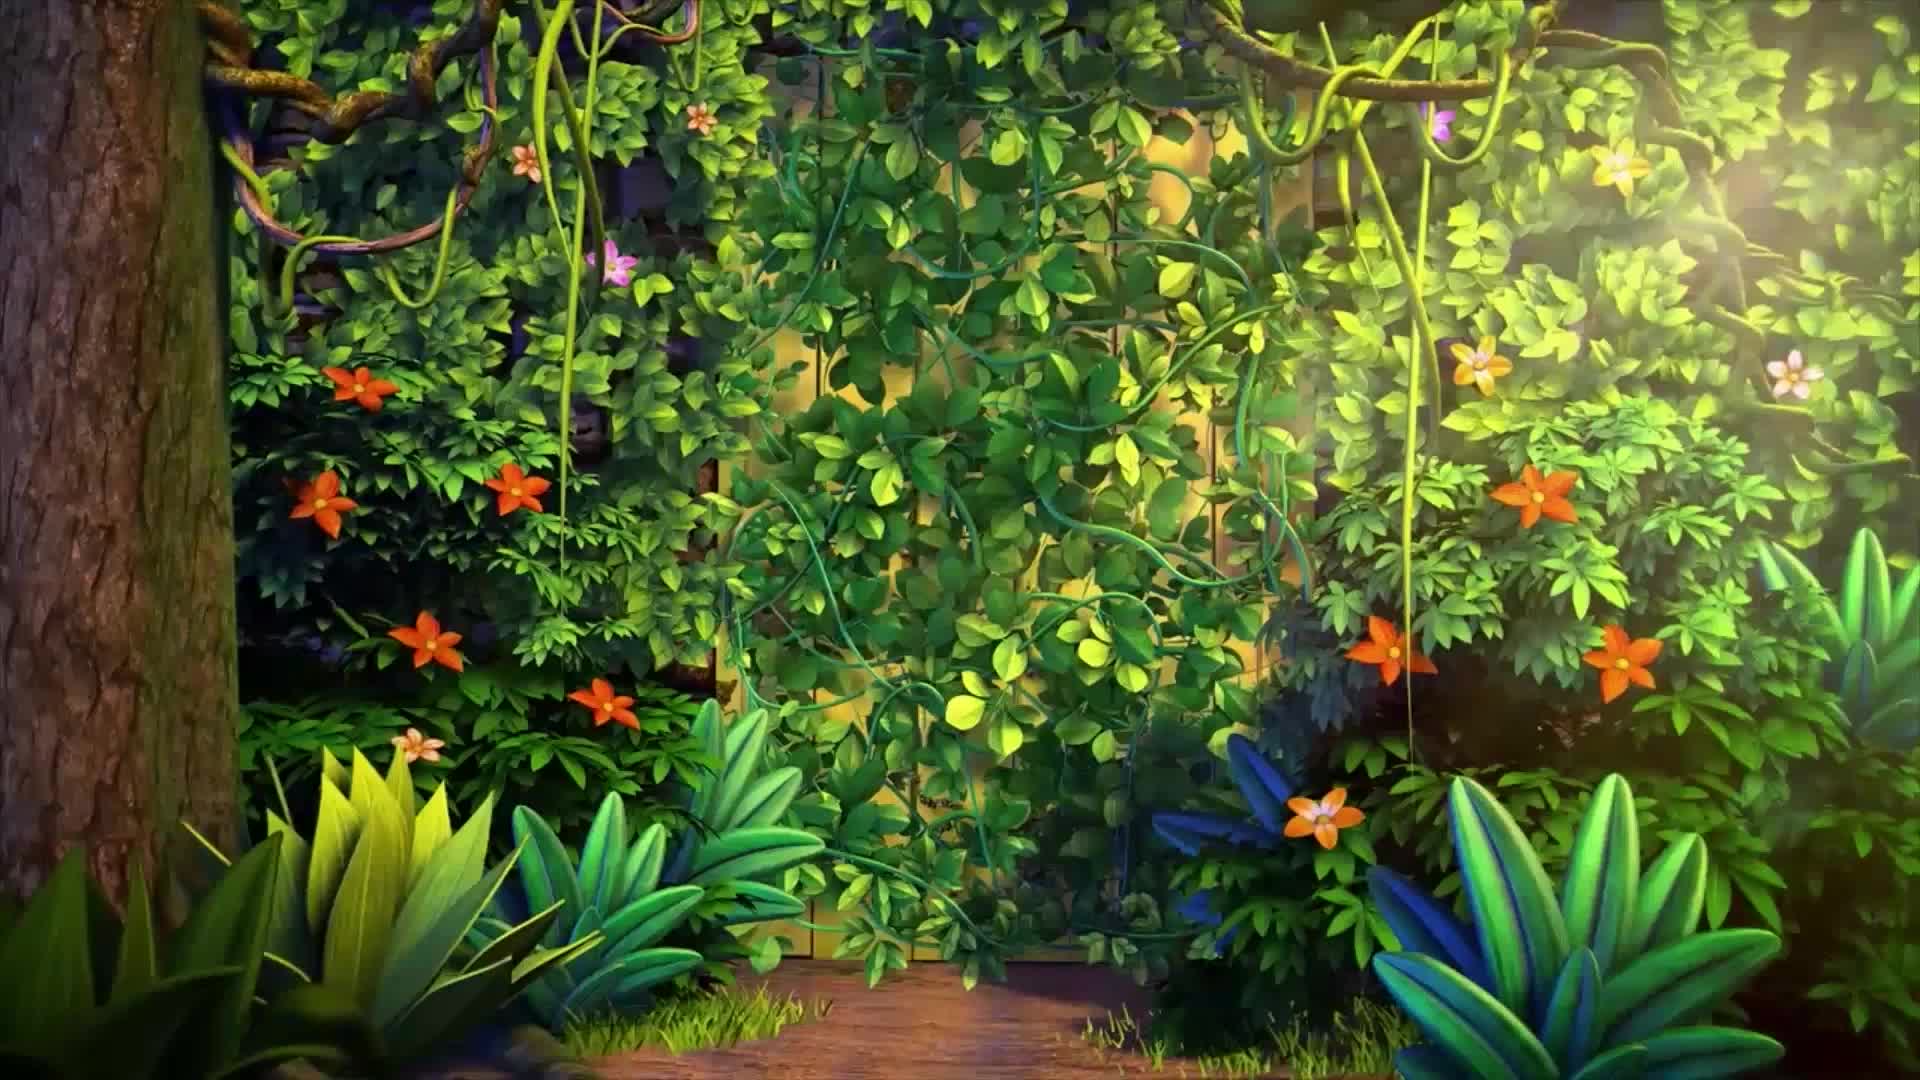 夏日儿歌快乐的布谷鸟led卡通大屏视频背景素材